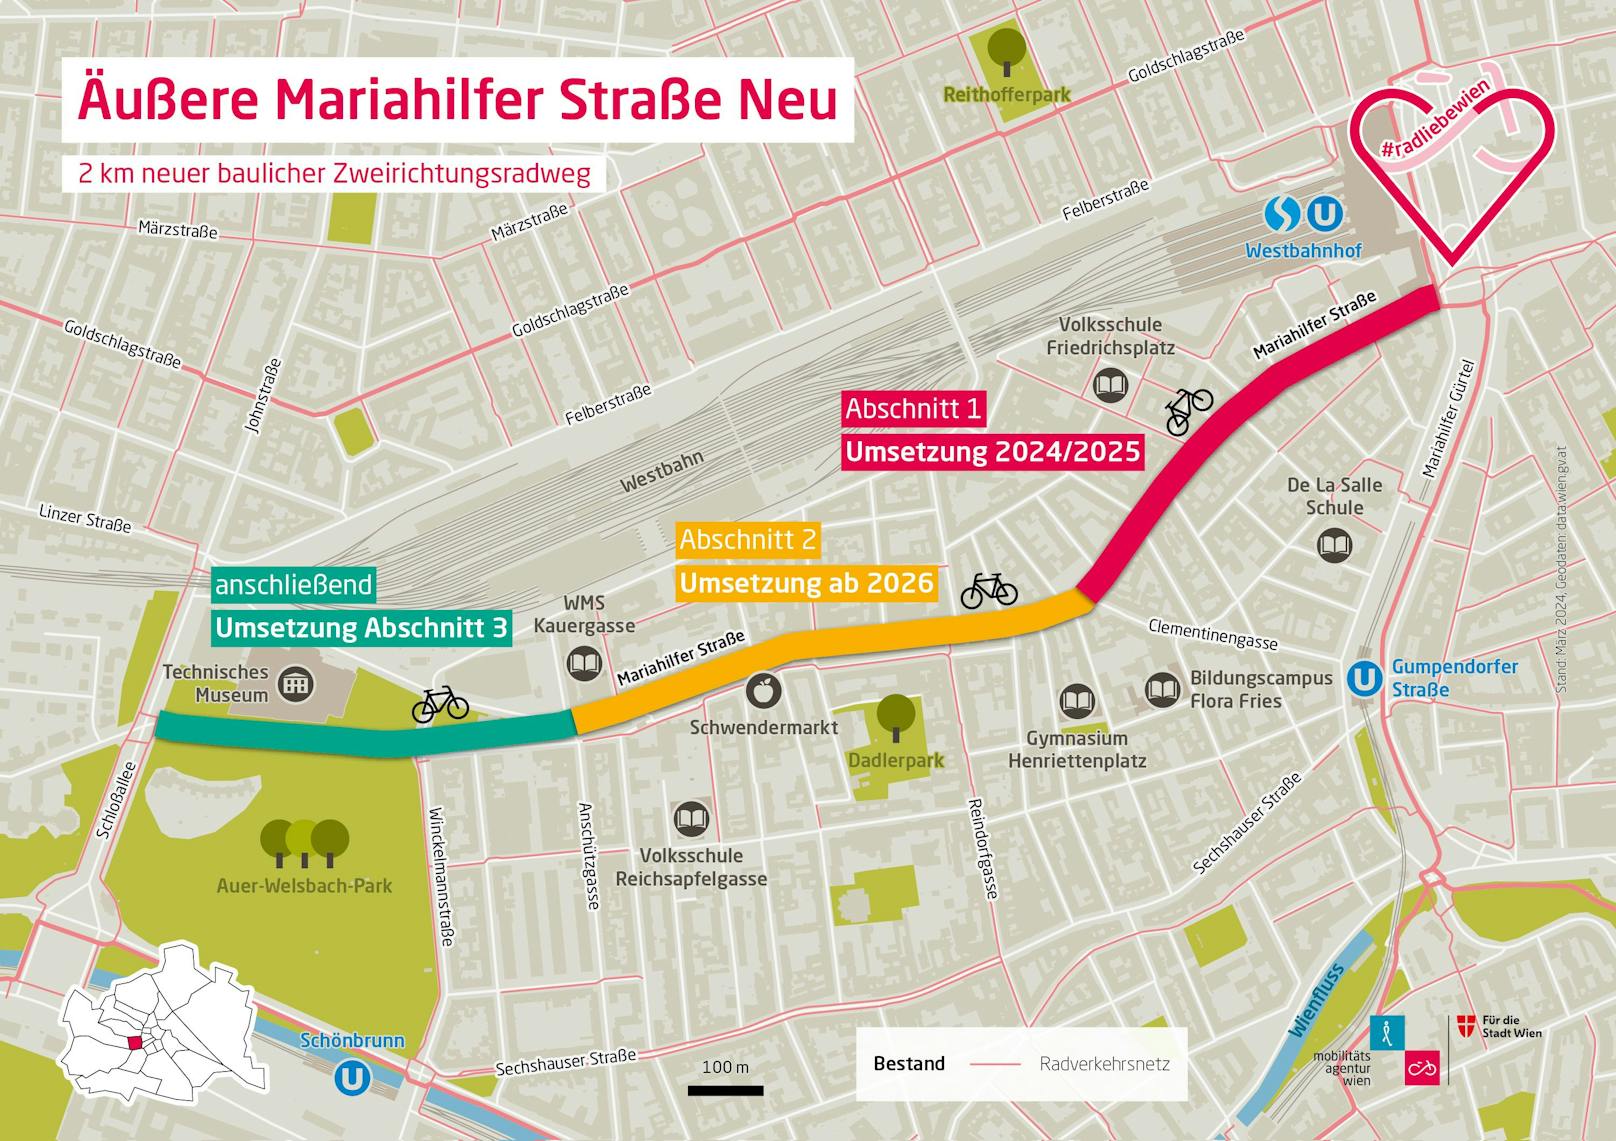 Die Äußere Mariahilfer Straße wird in drei Abschnitten umgestaltet.